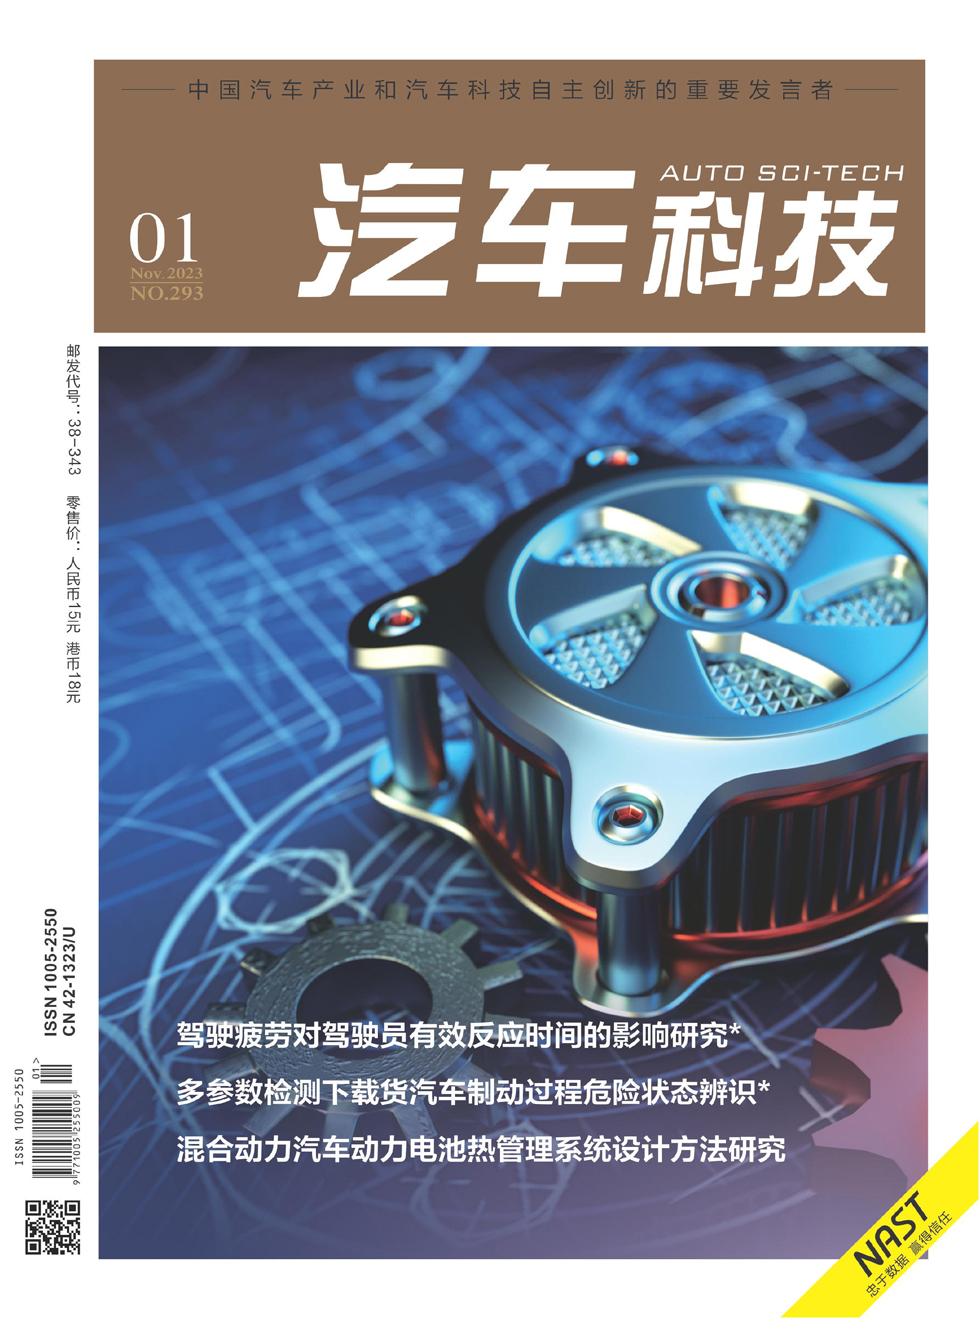 汽车科技杂志封面